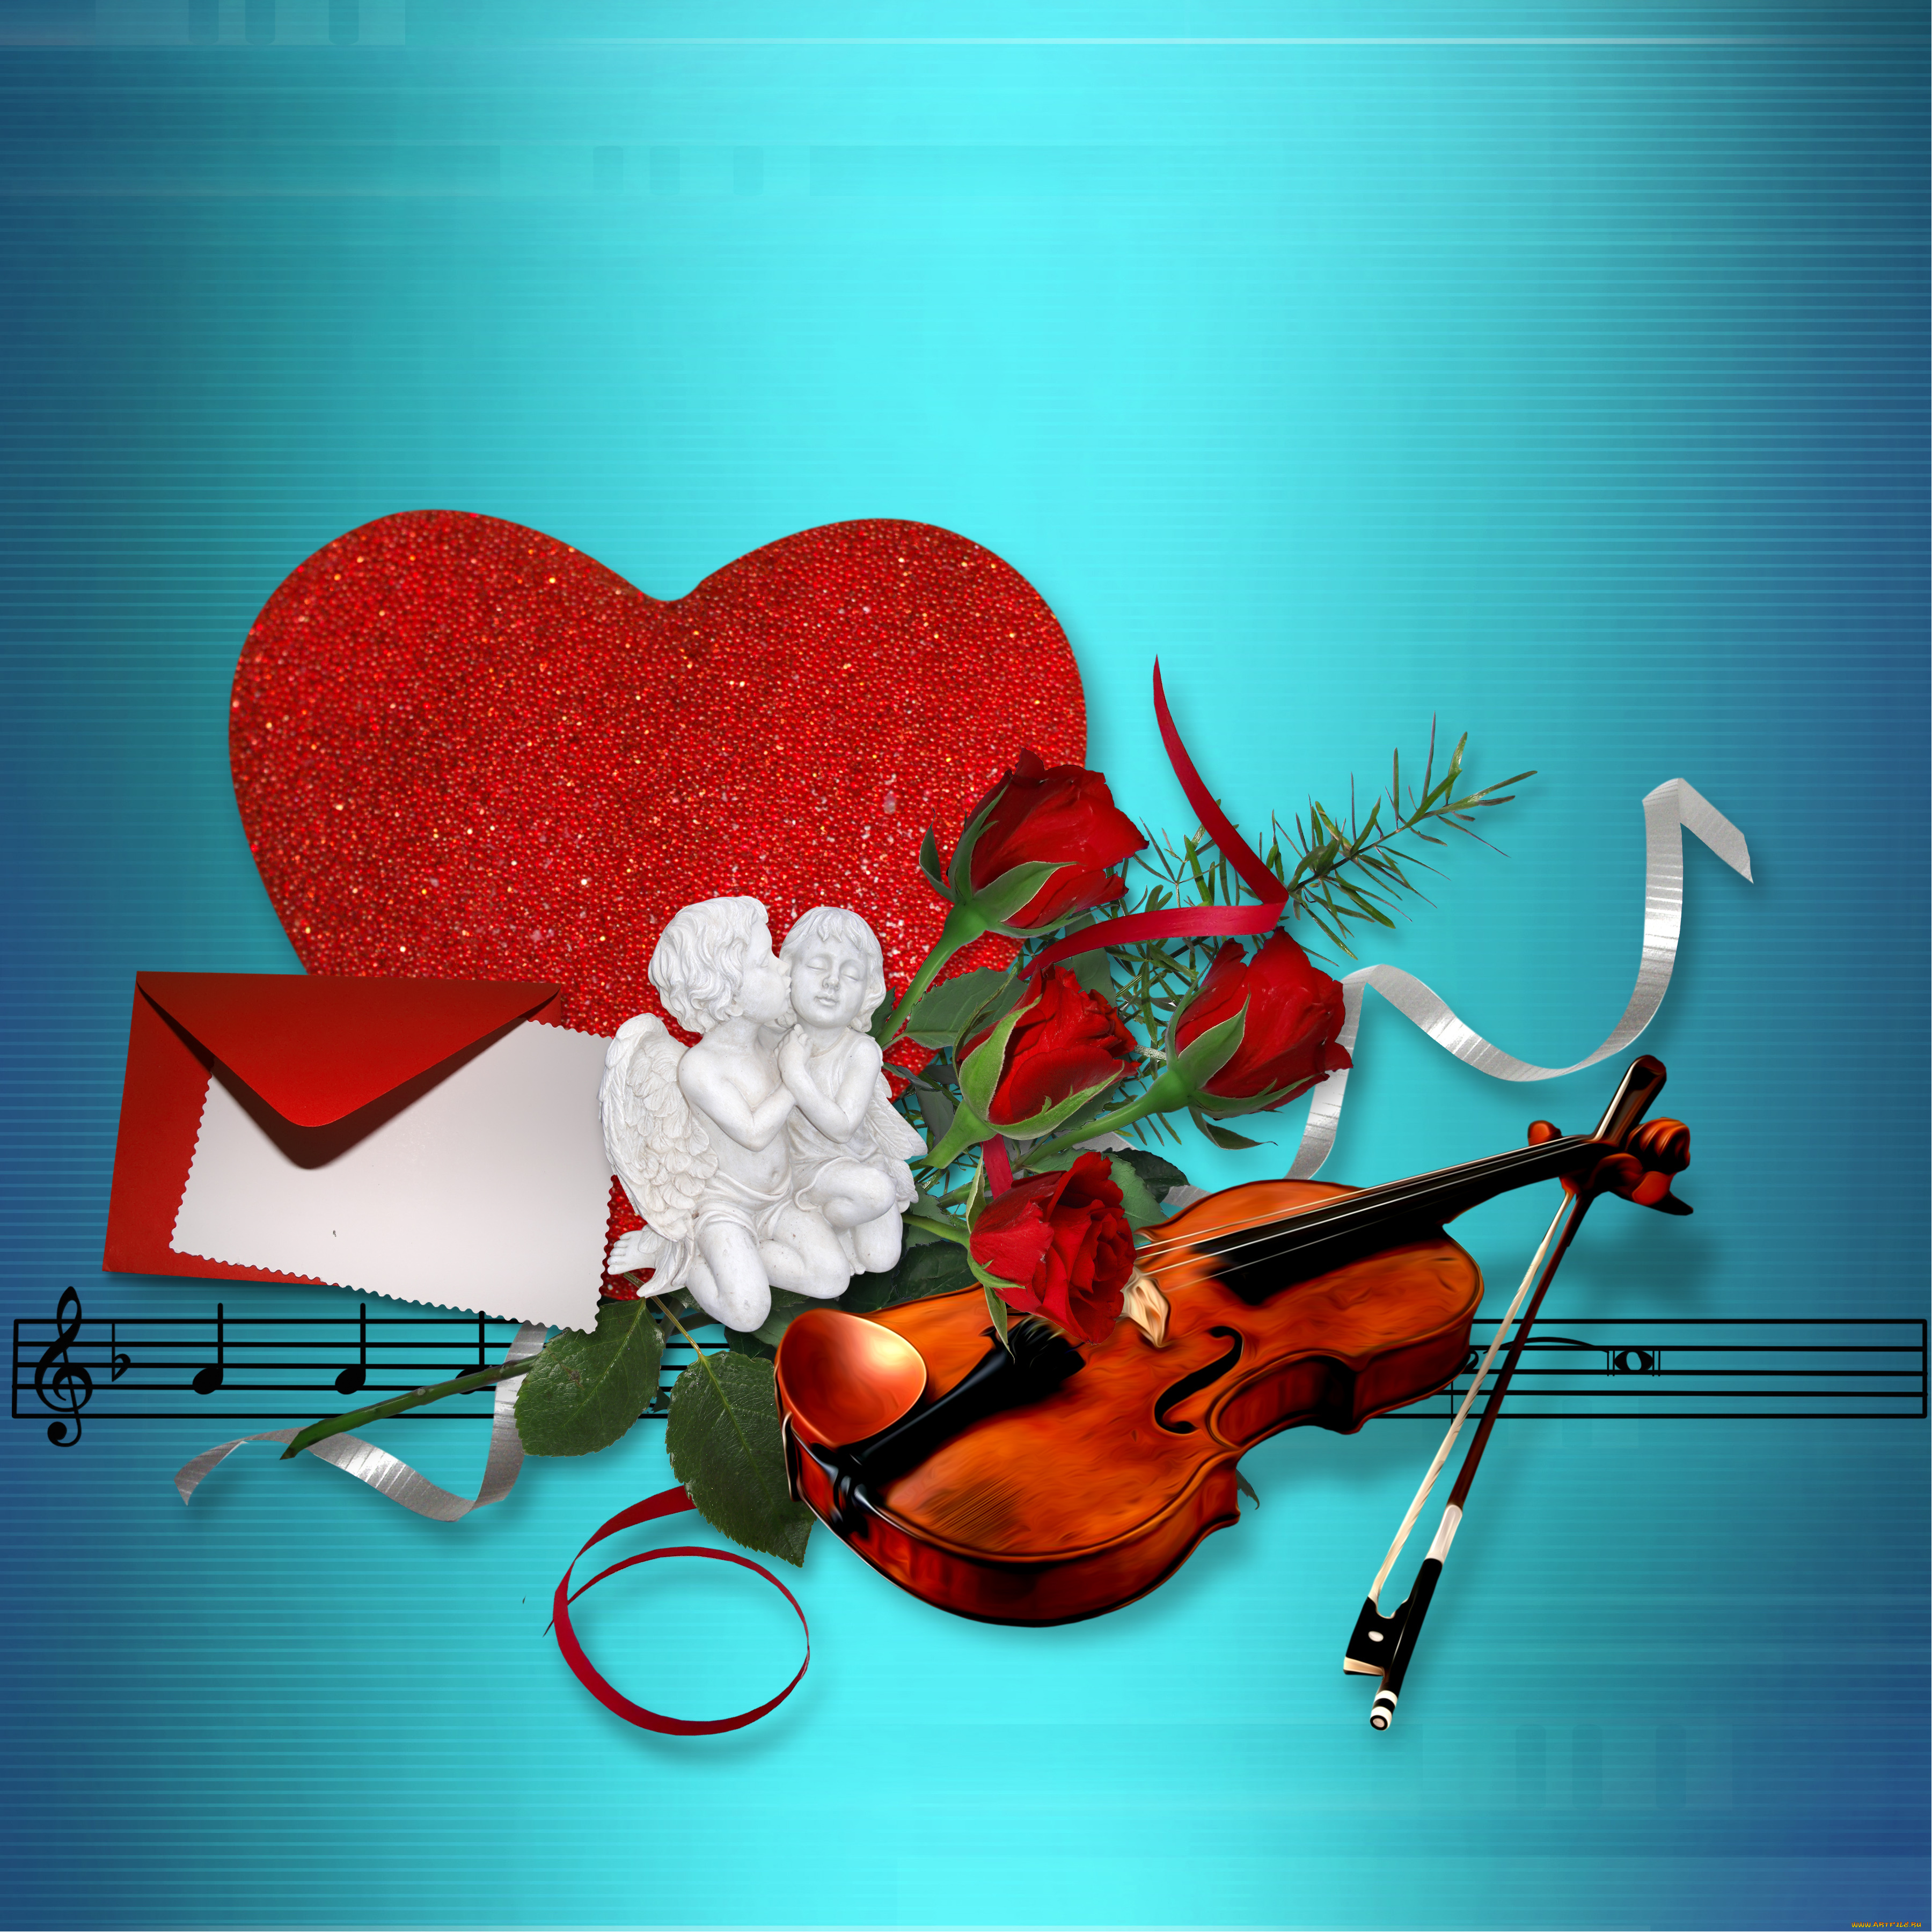 Сердца звучали в унисон мелодия любви играла. Музыкальное сердце. Музыкальные картинки. Скрипка сердце. Музыкальное сердечко.